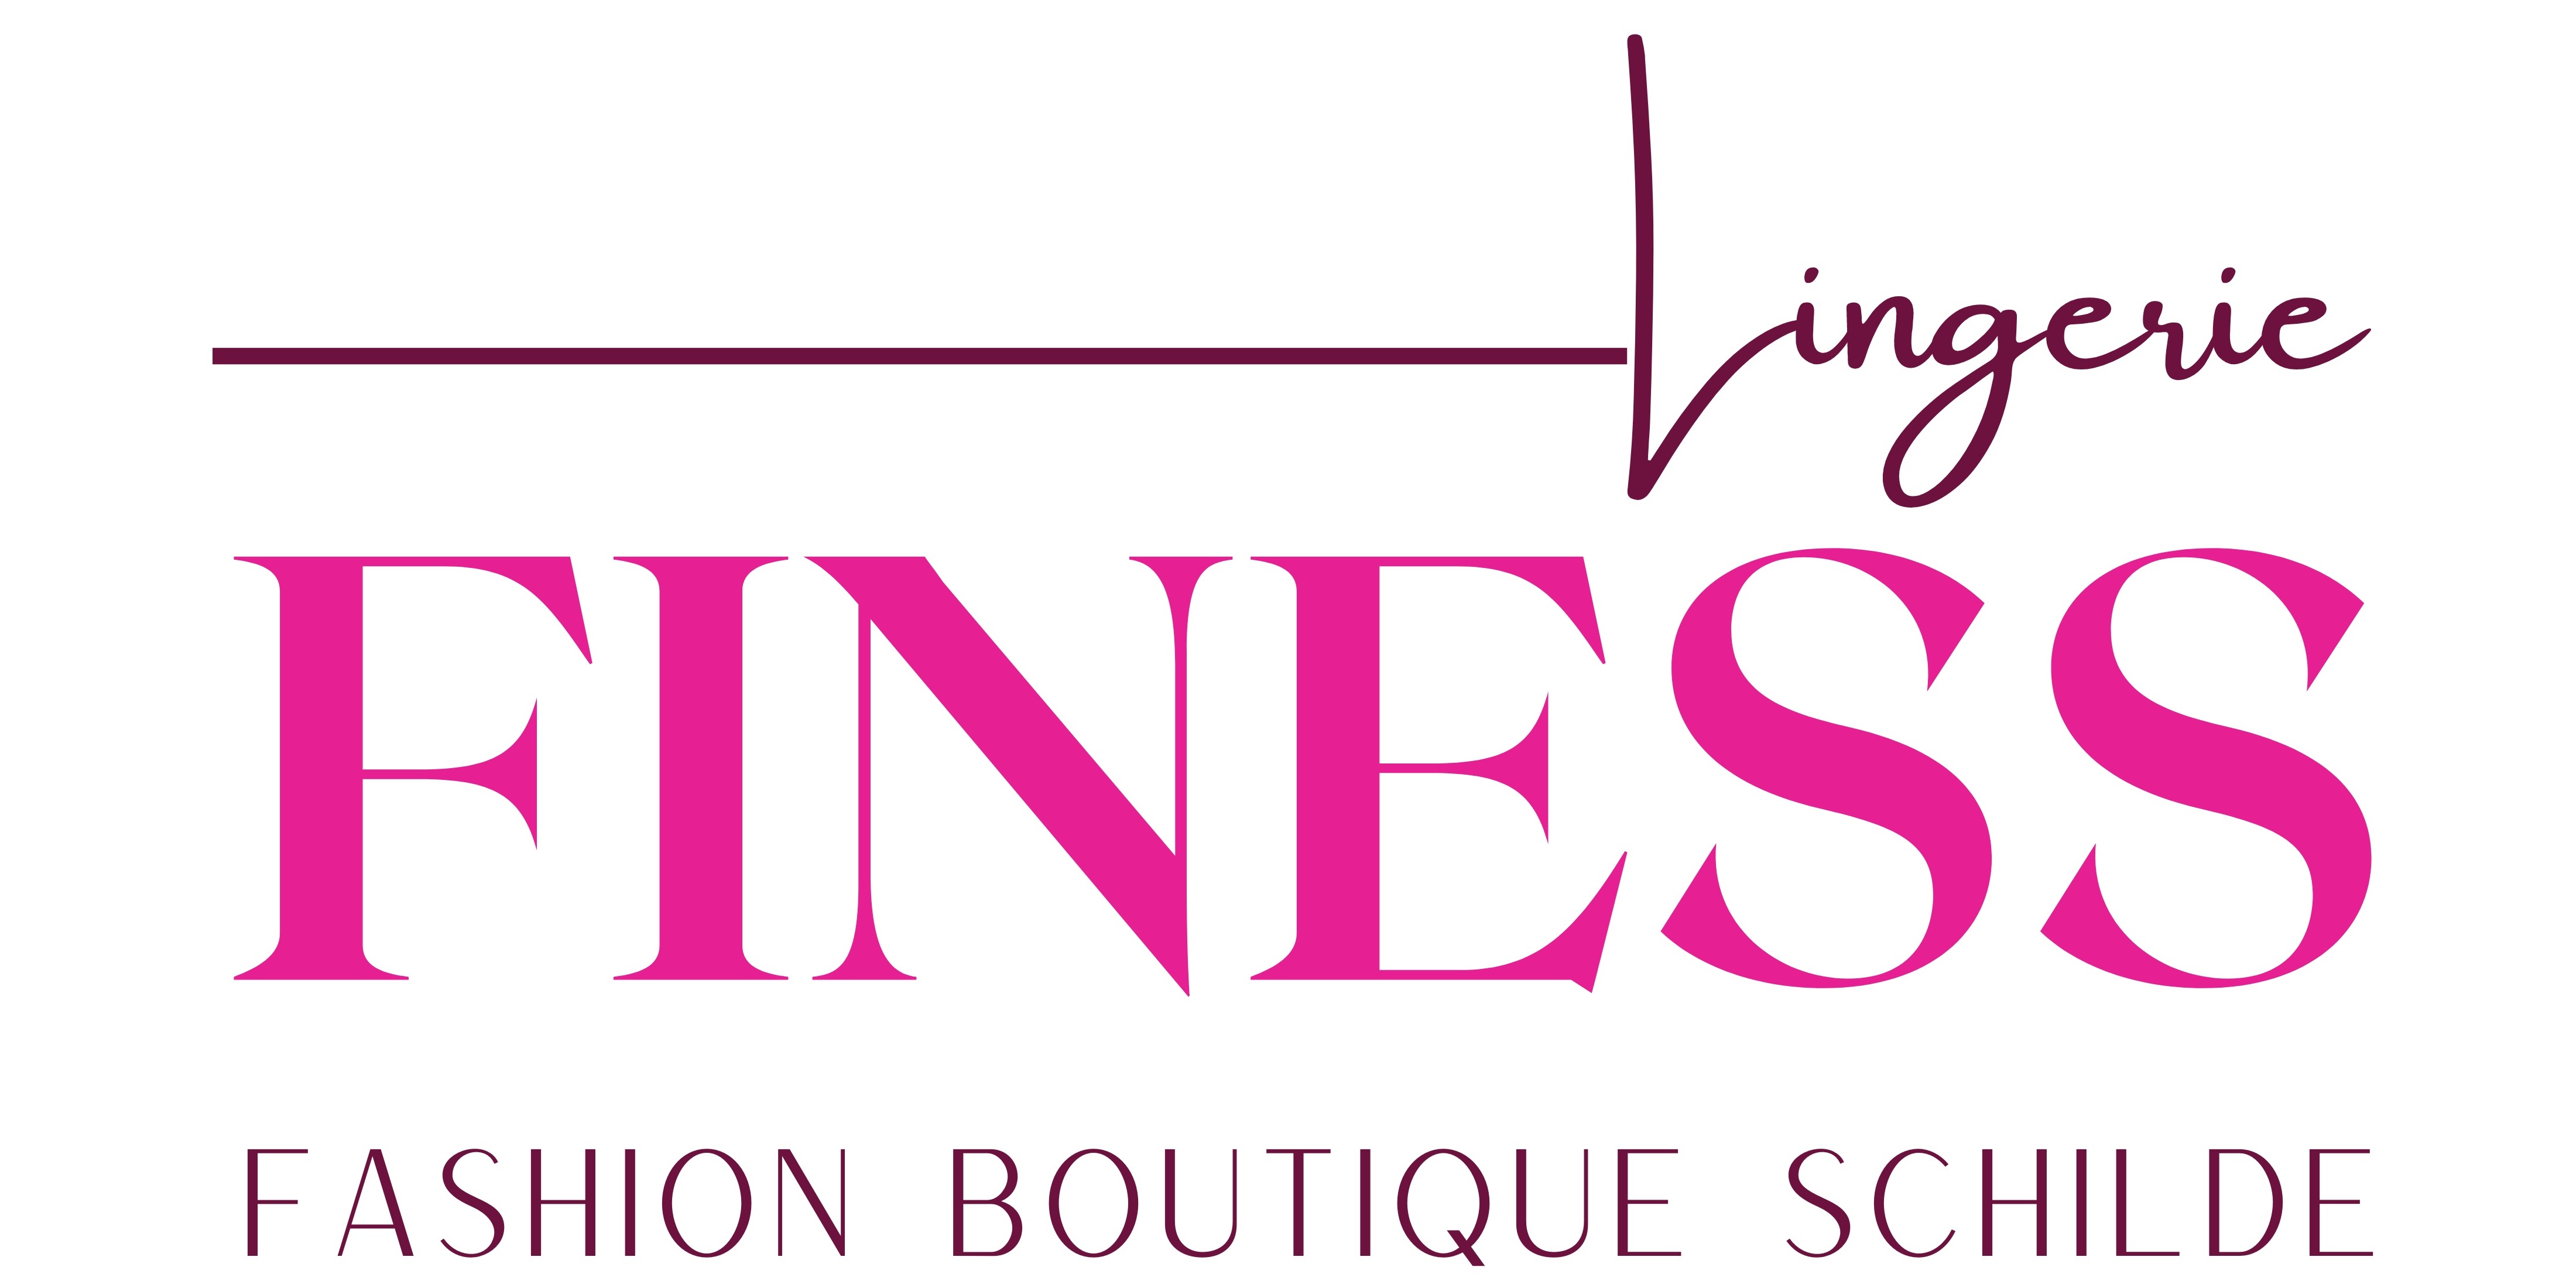 Finess Lingerie logo